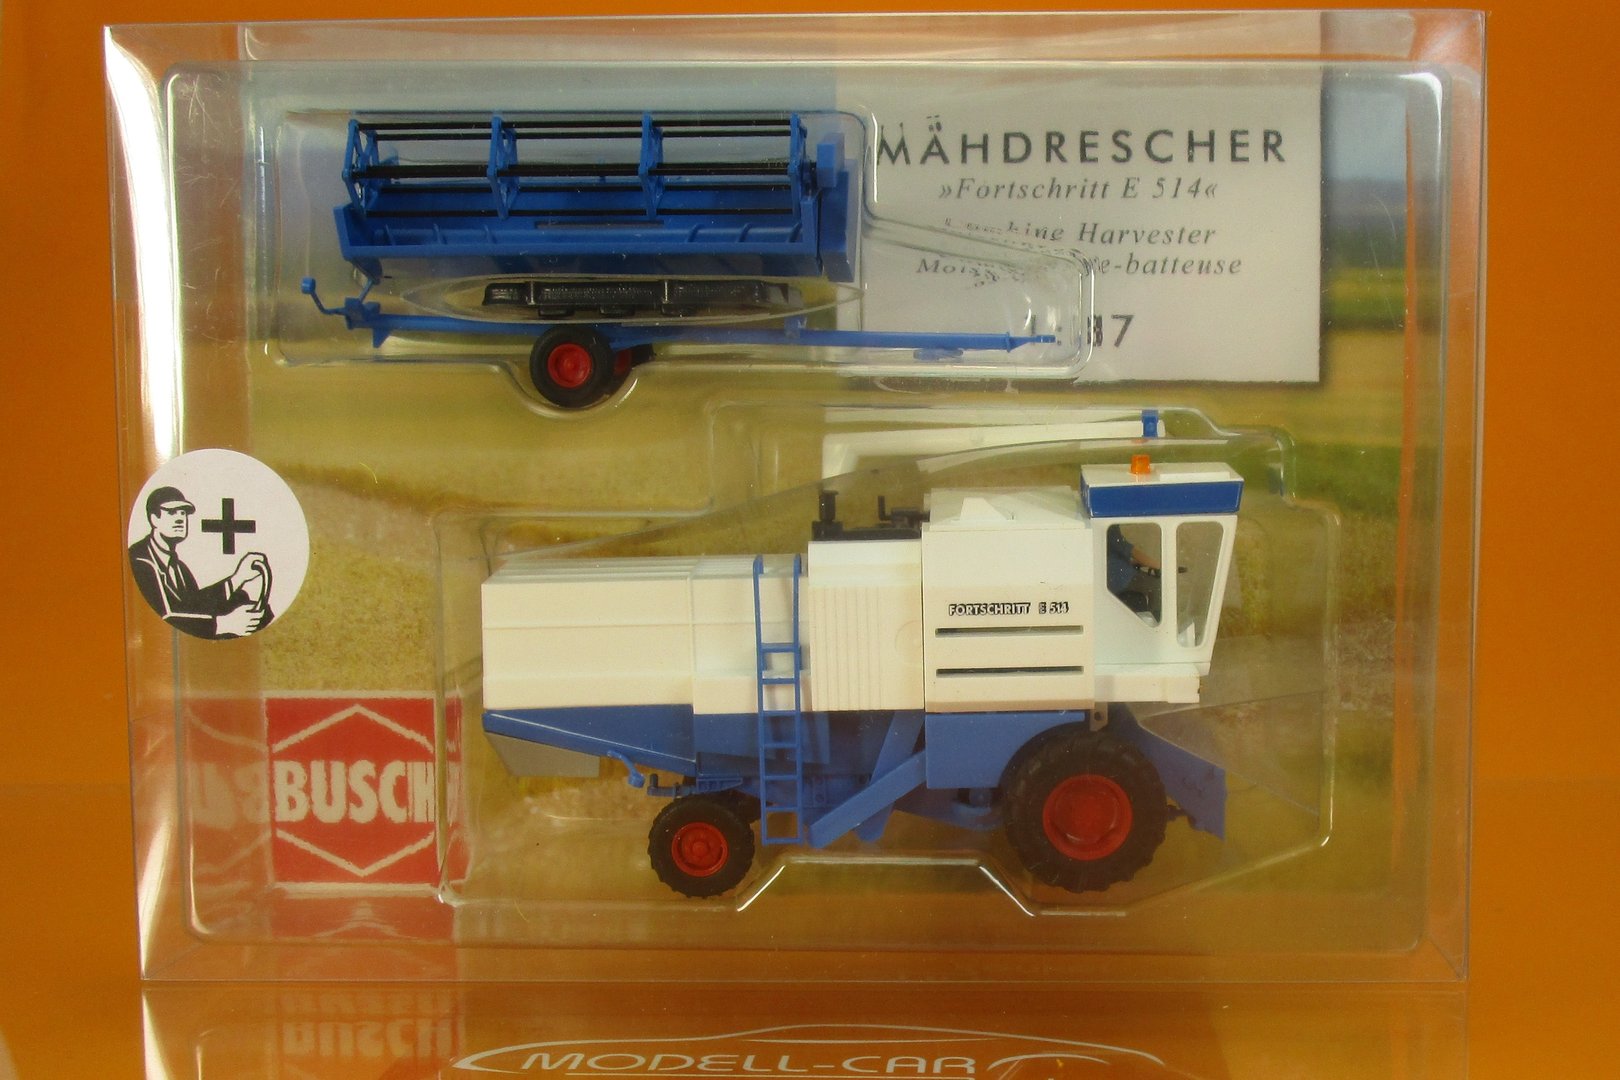 Busch 40177 H0 Mähdrescher Fortschritt E 514 LPG mit Bäuerin Blau  NEU OVP